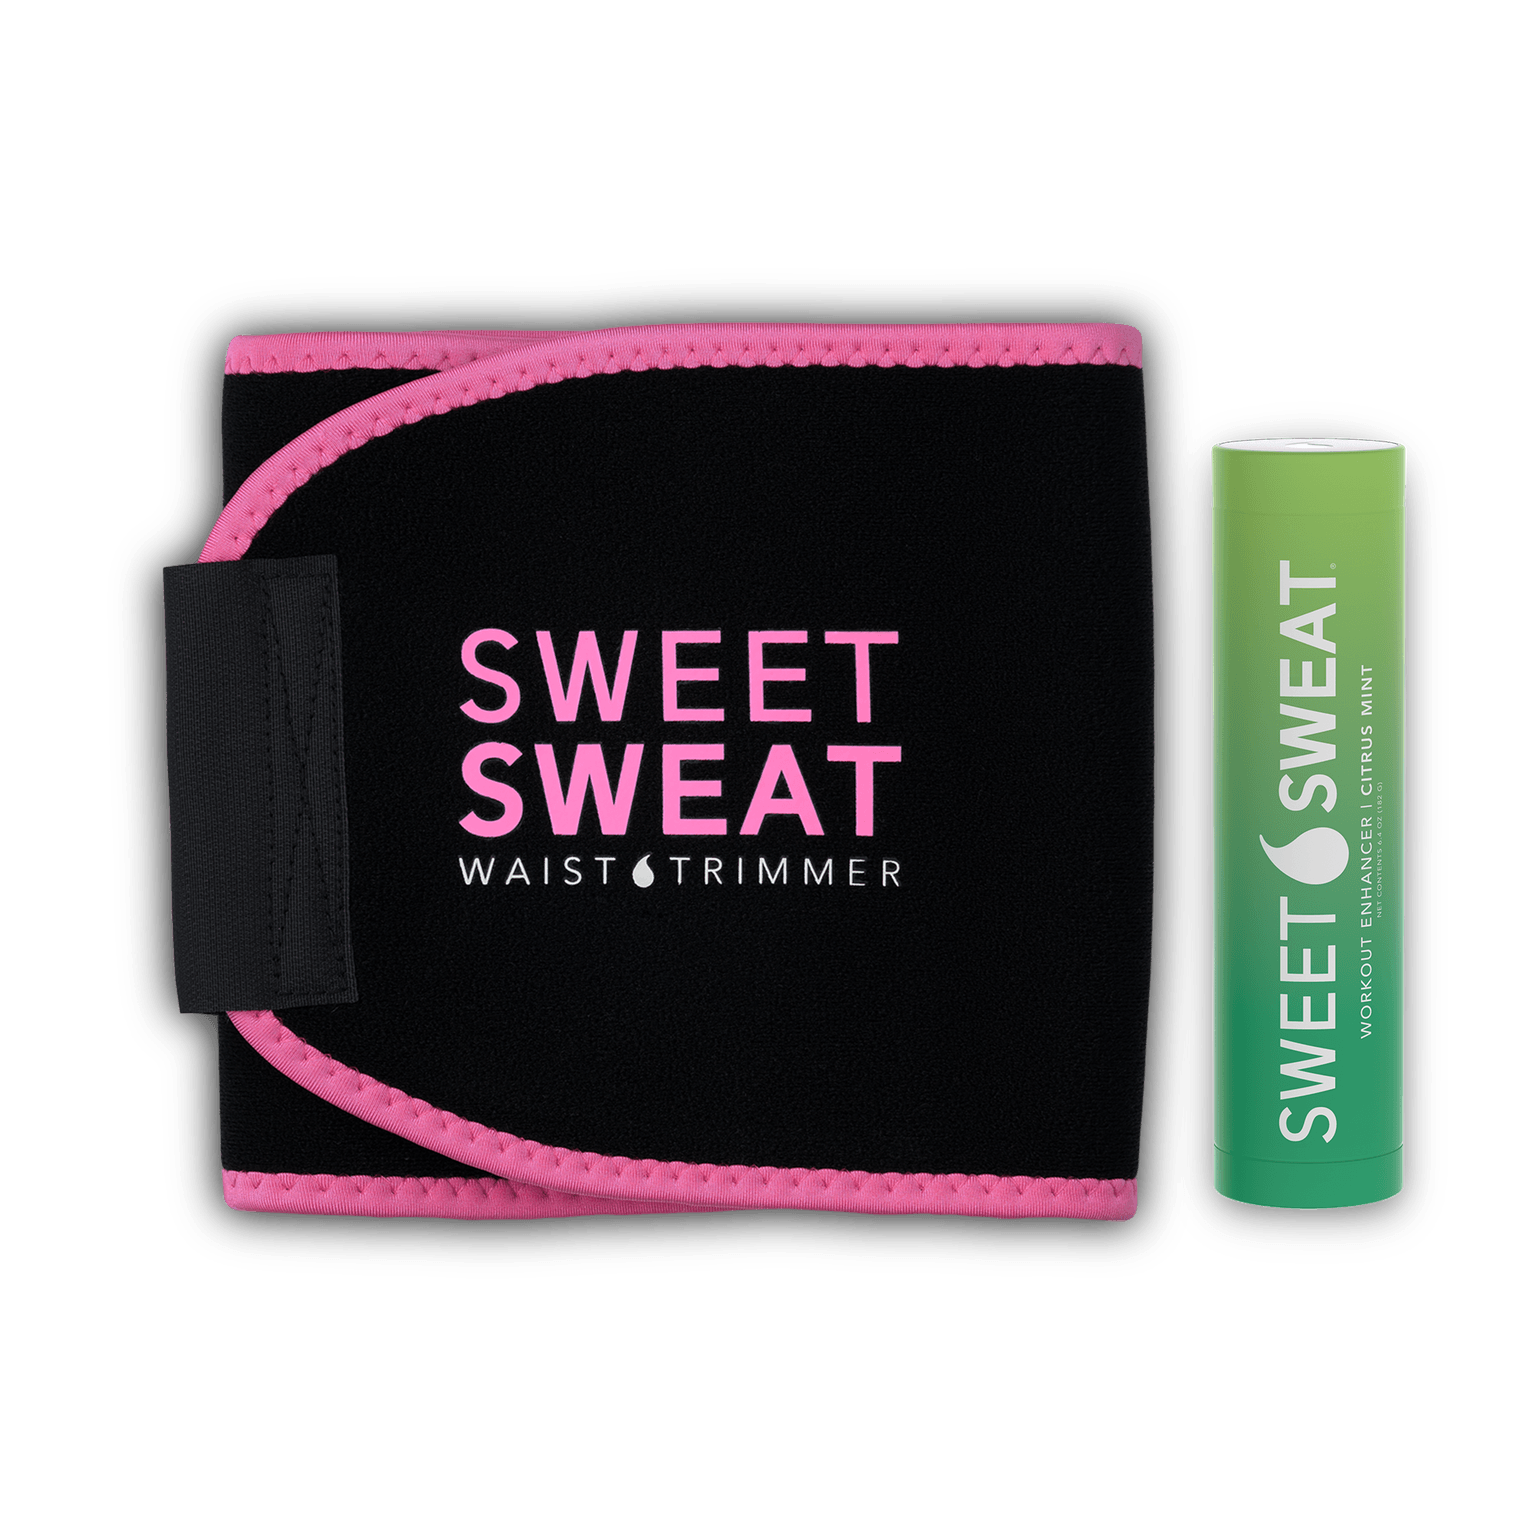  Store Original Sweat Belt Premium Waist Trimmer Wight